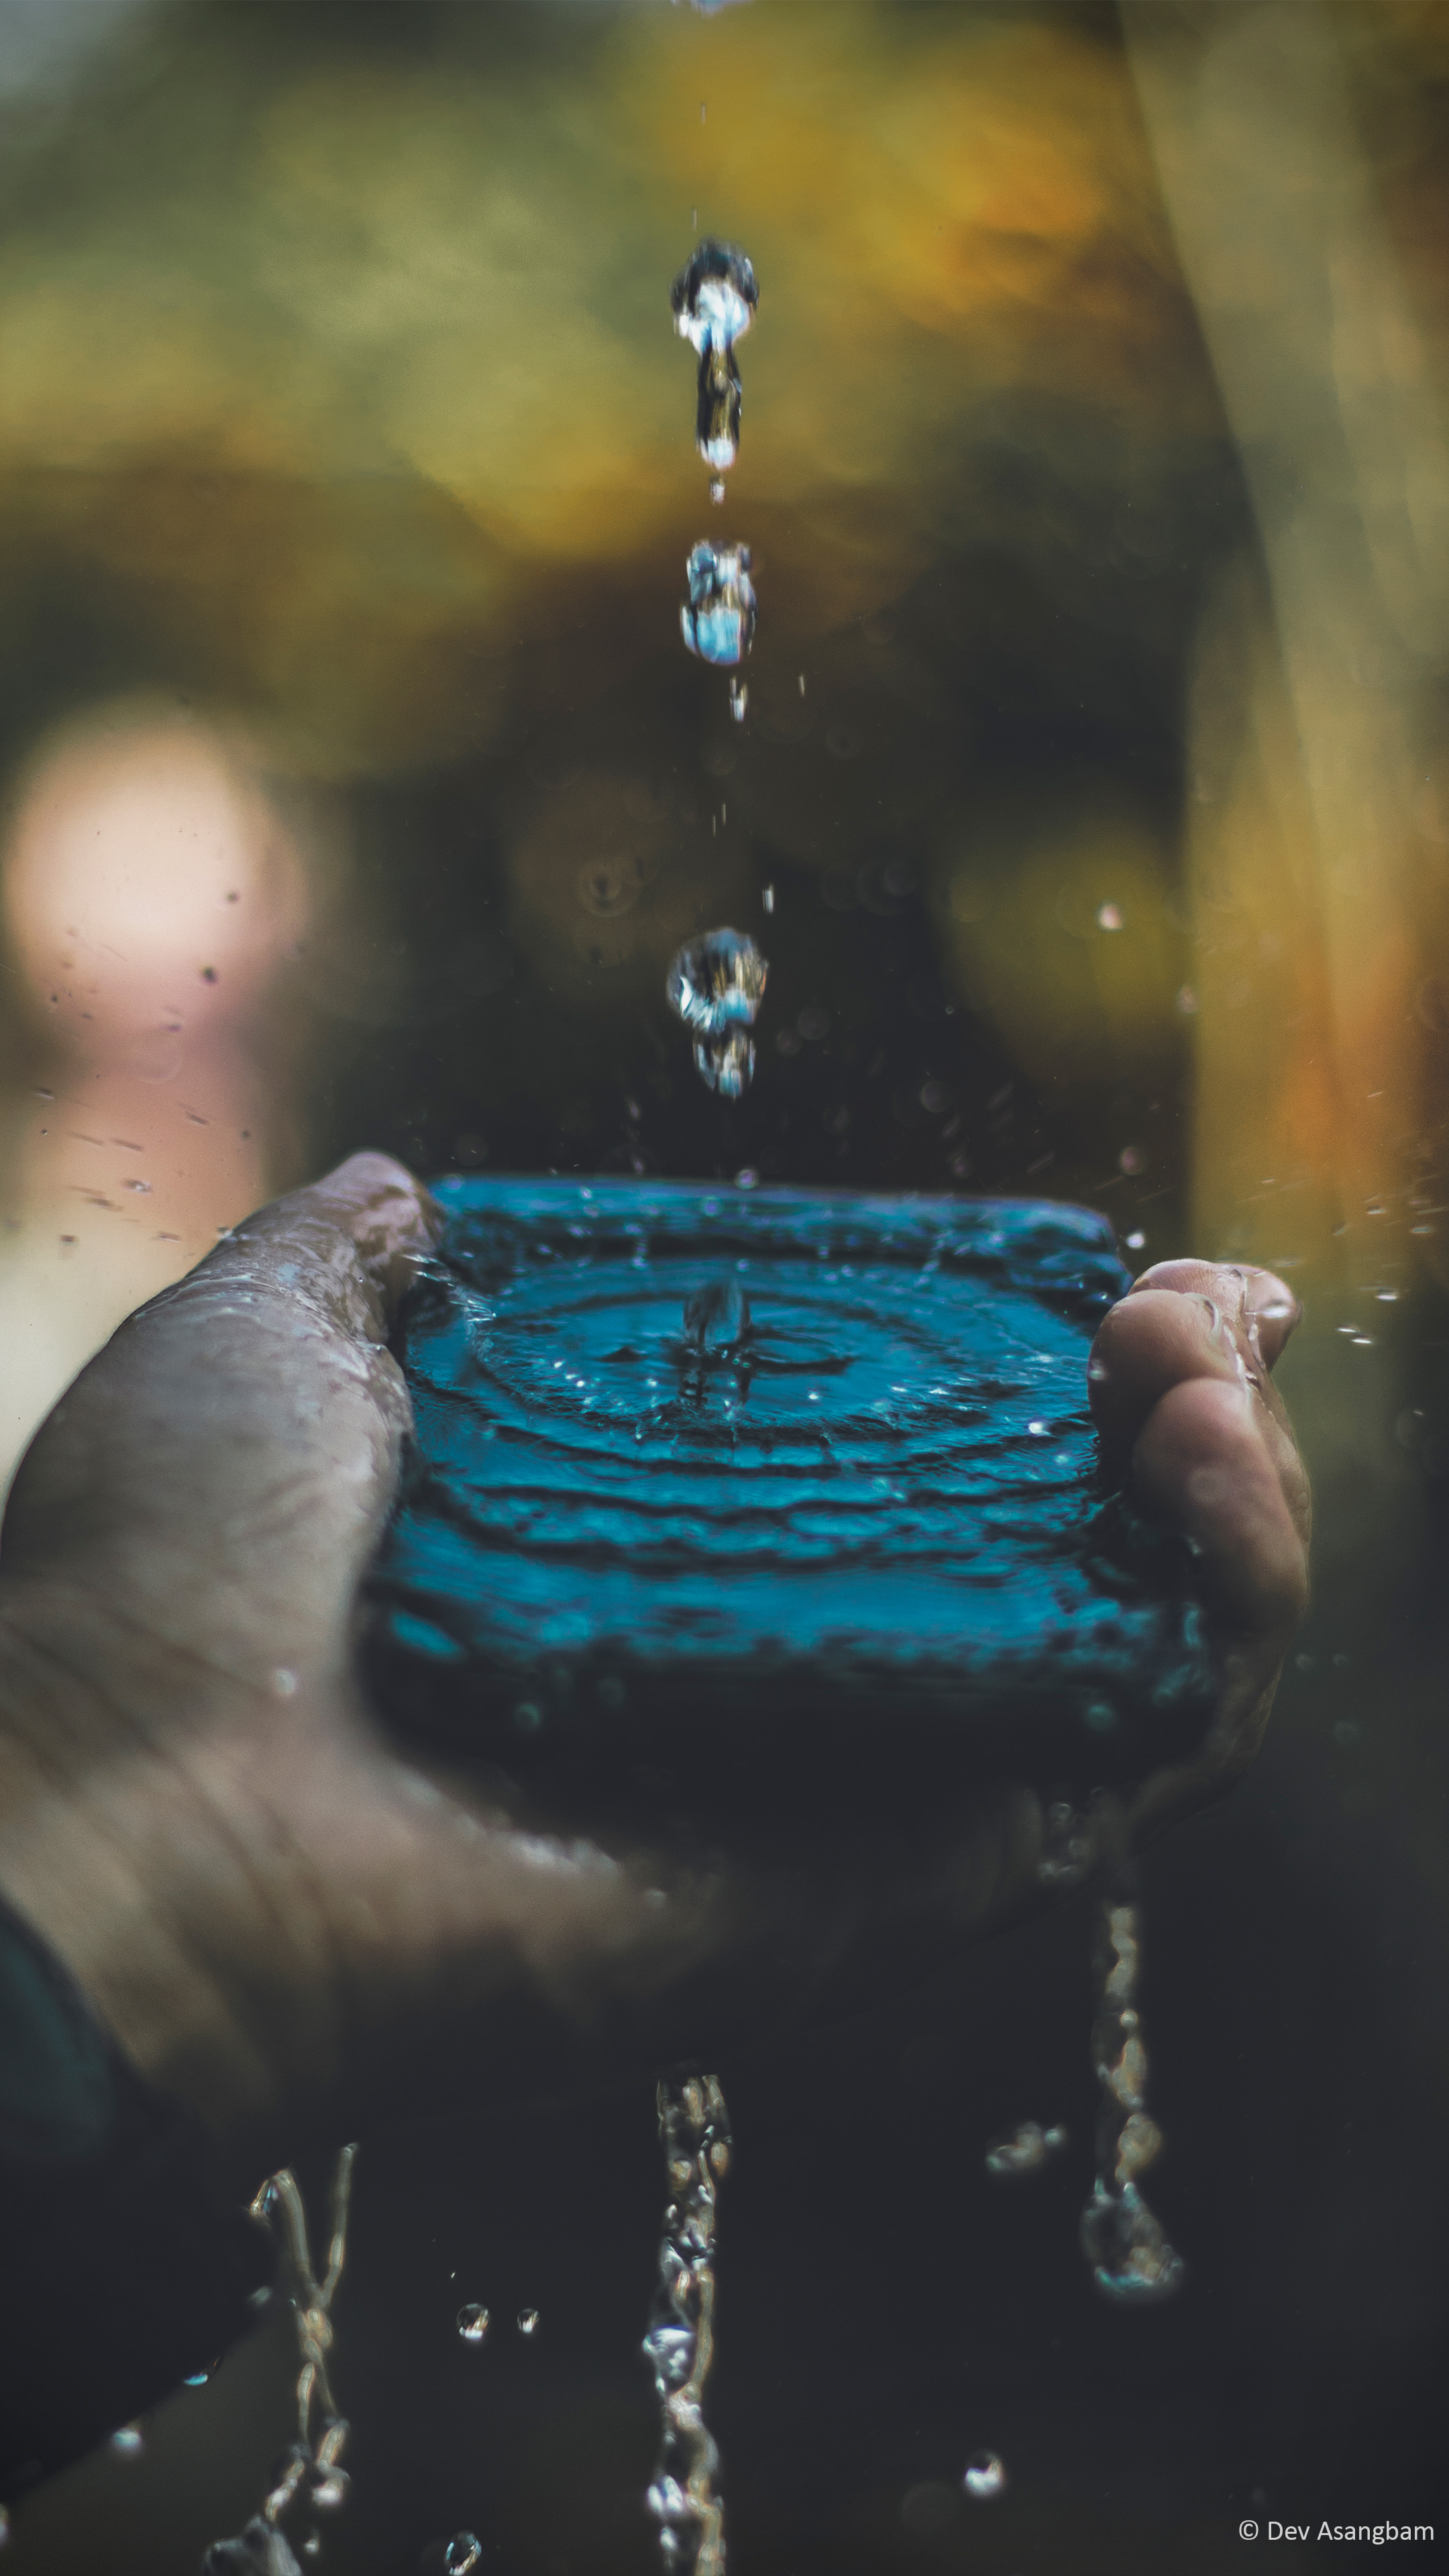 Hình nền Water Splash 4K Ultra HD Mobile là bức tranh đầy màu sắc và vẻ đẹp của thiên nhiên sử dụng nước như là chủ đề chính. Sự lắng đọng và thường trực của nước thể hiện một cảm giác yên tĩnh đầy bình yên, tác động đến tinh thần và cảm xúc bạn. Hãy thưởng thức những hình nền điện thoại đẹp này ngay!